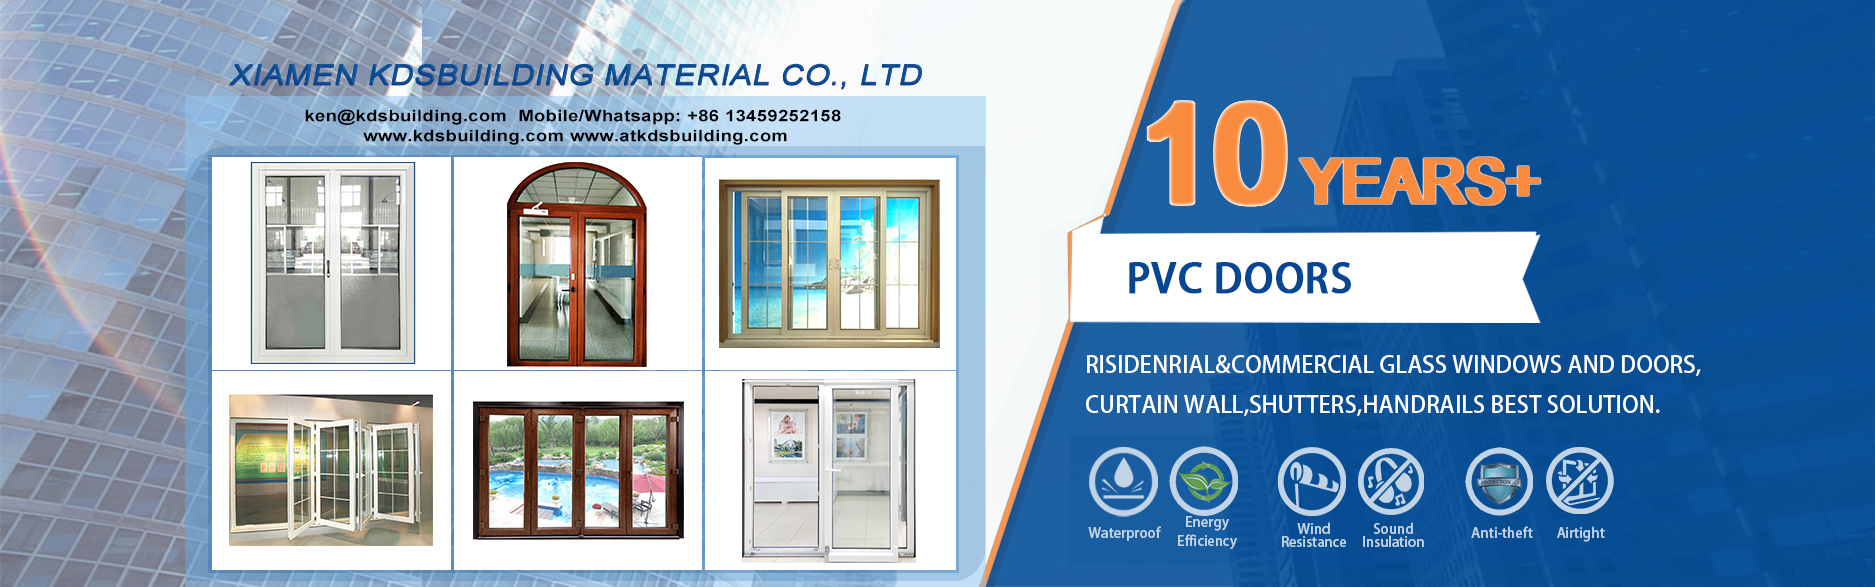 XIAMEN KDSBUILDING MATERIAL CO.,LTD-PVC door supplier